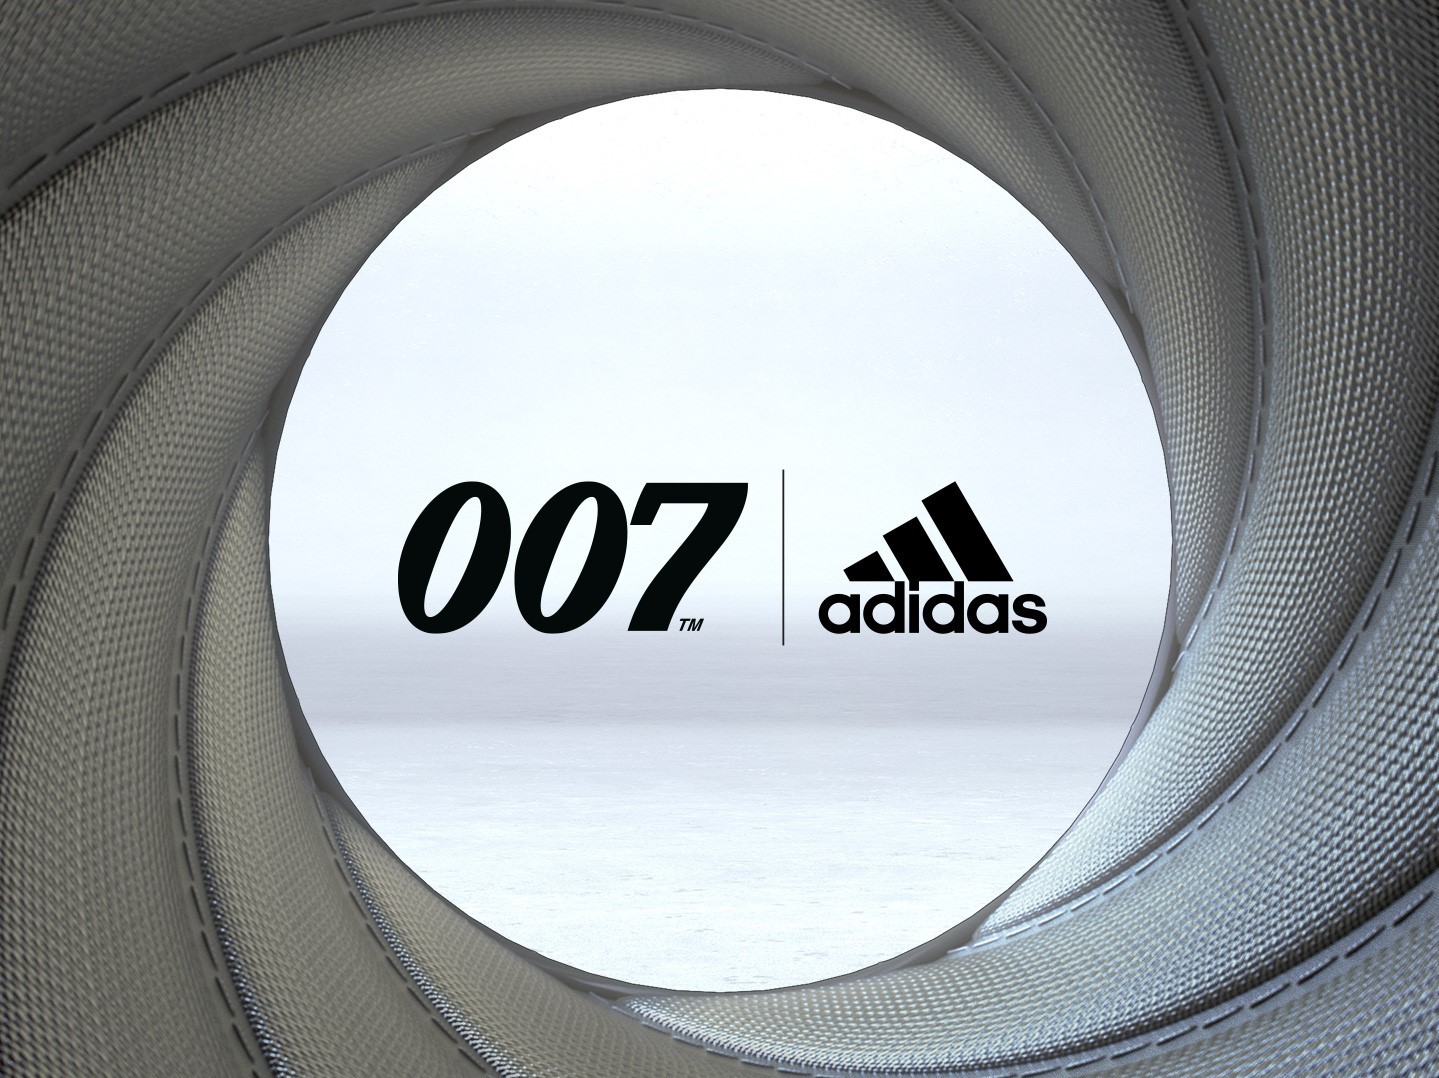 Ziele auf die neue adidas x James Bond Kollektion